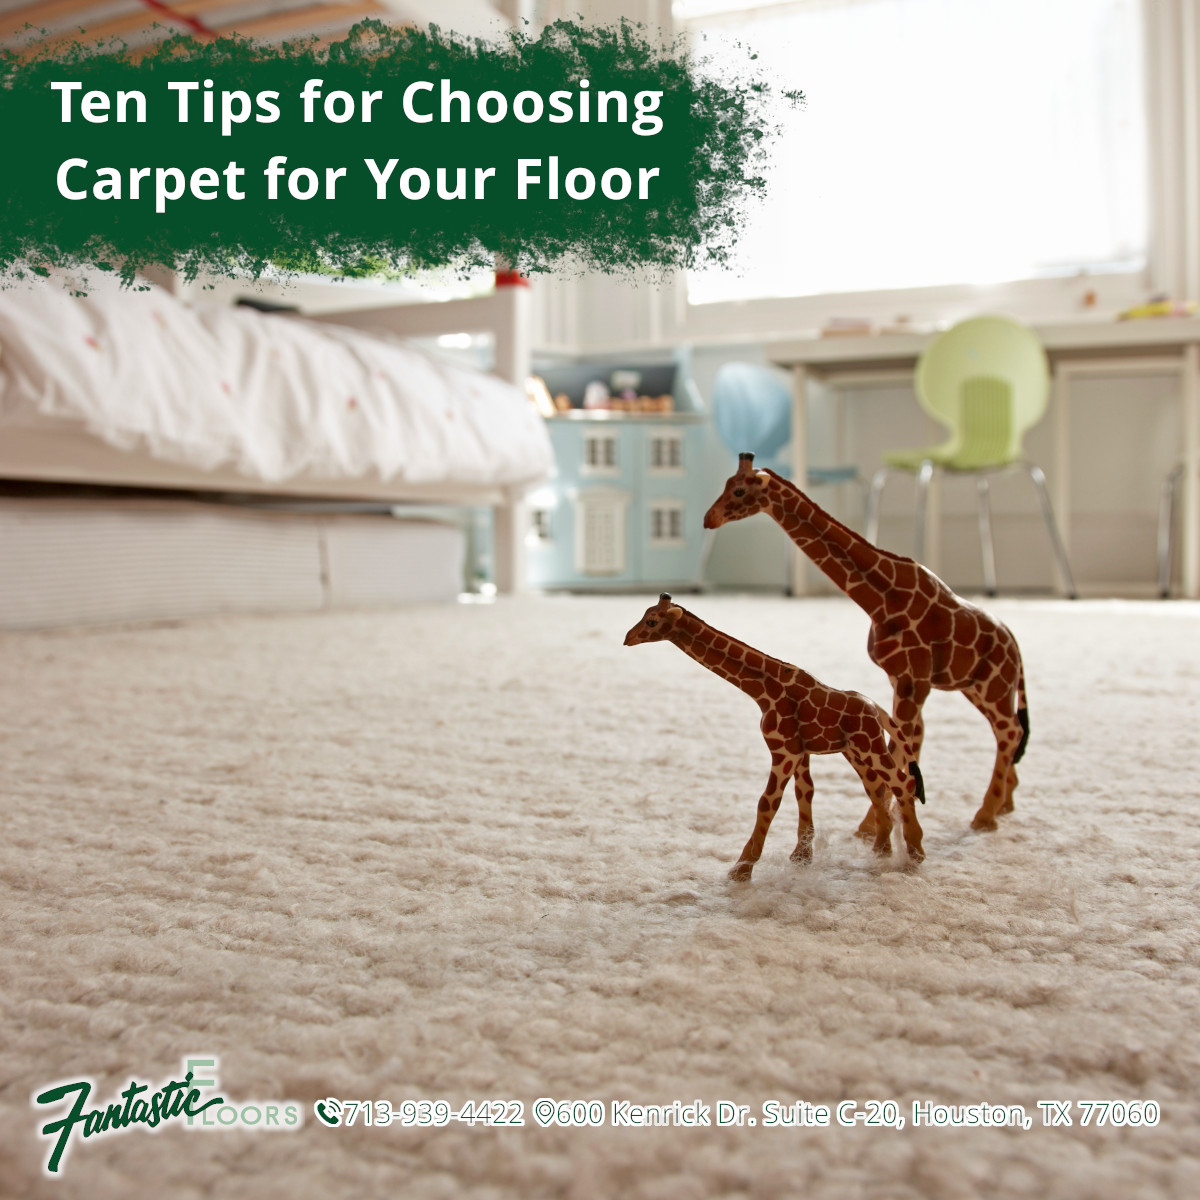 Ten Tips for Choosing Carpet for Your Floor